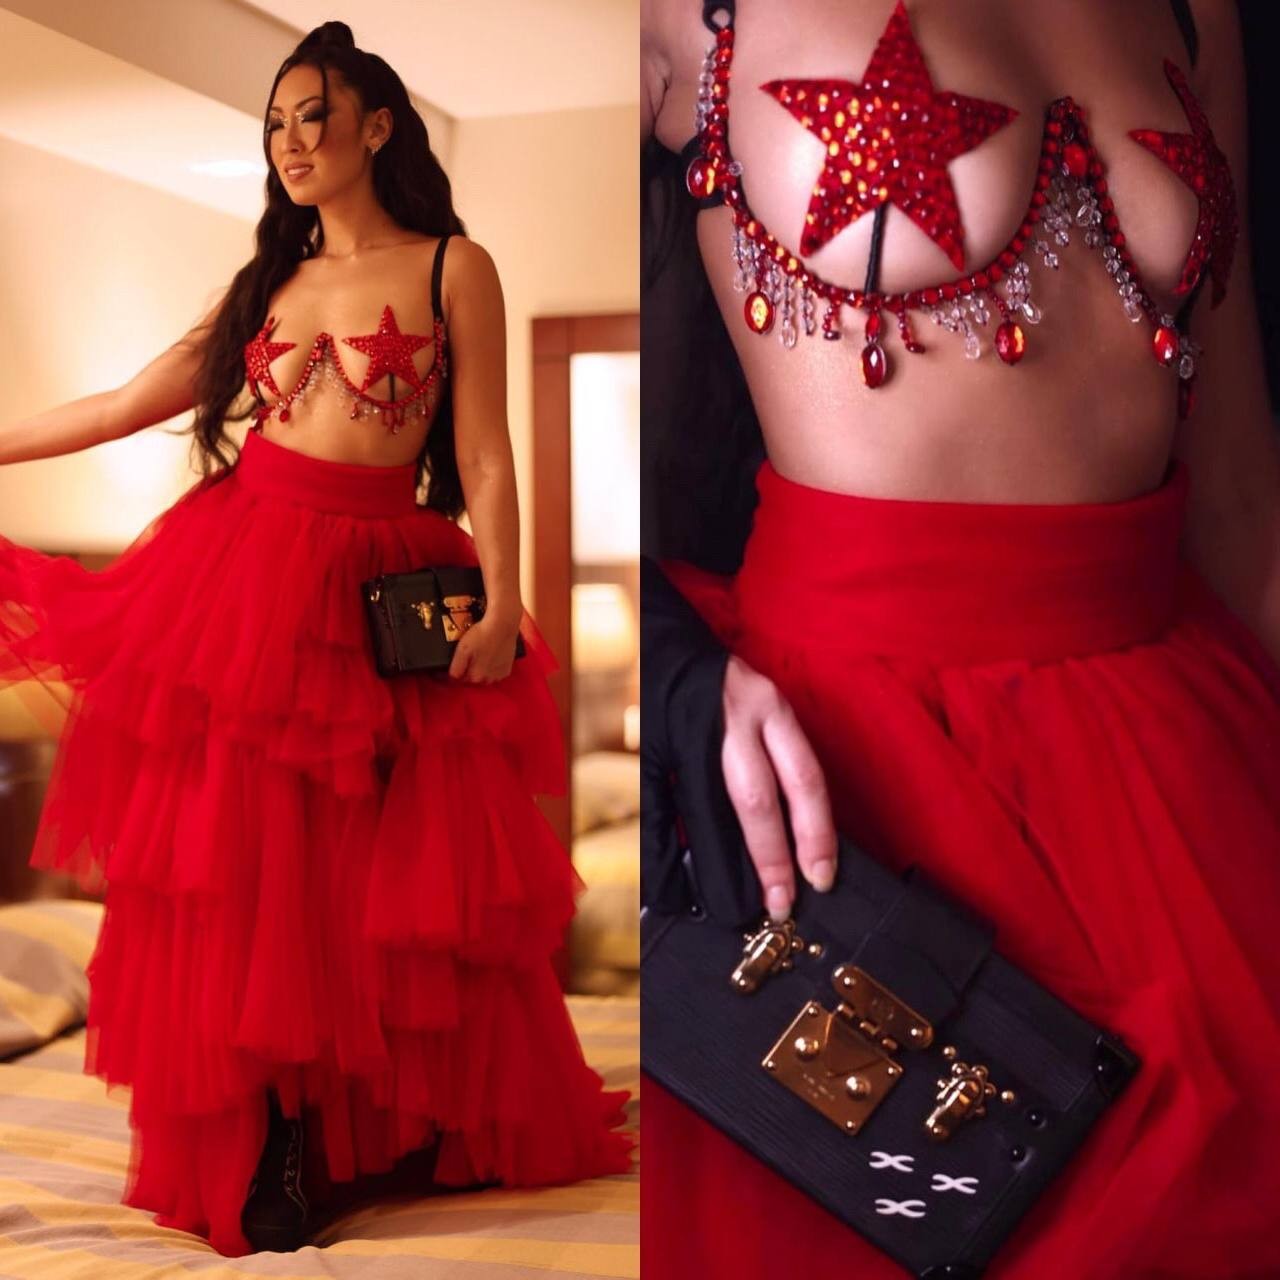 Ana Hikari viraliza ao contar perrengue chique com bolsa da Louis Vuitton (Foto: Reprodução / Instagram)